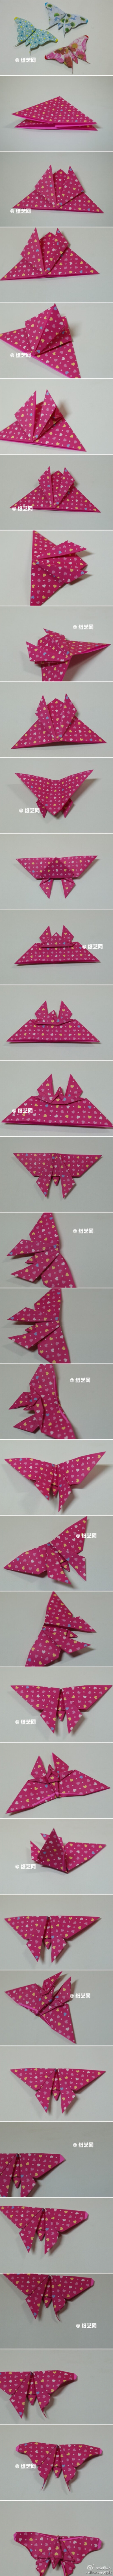 蝴蝶折纸。